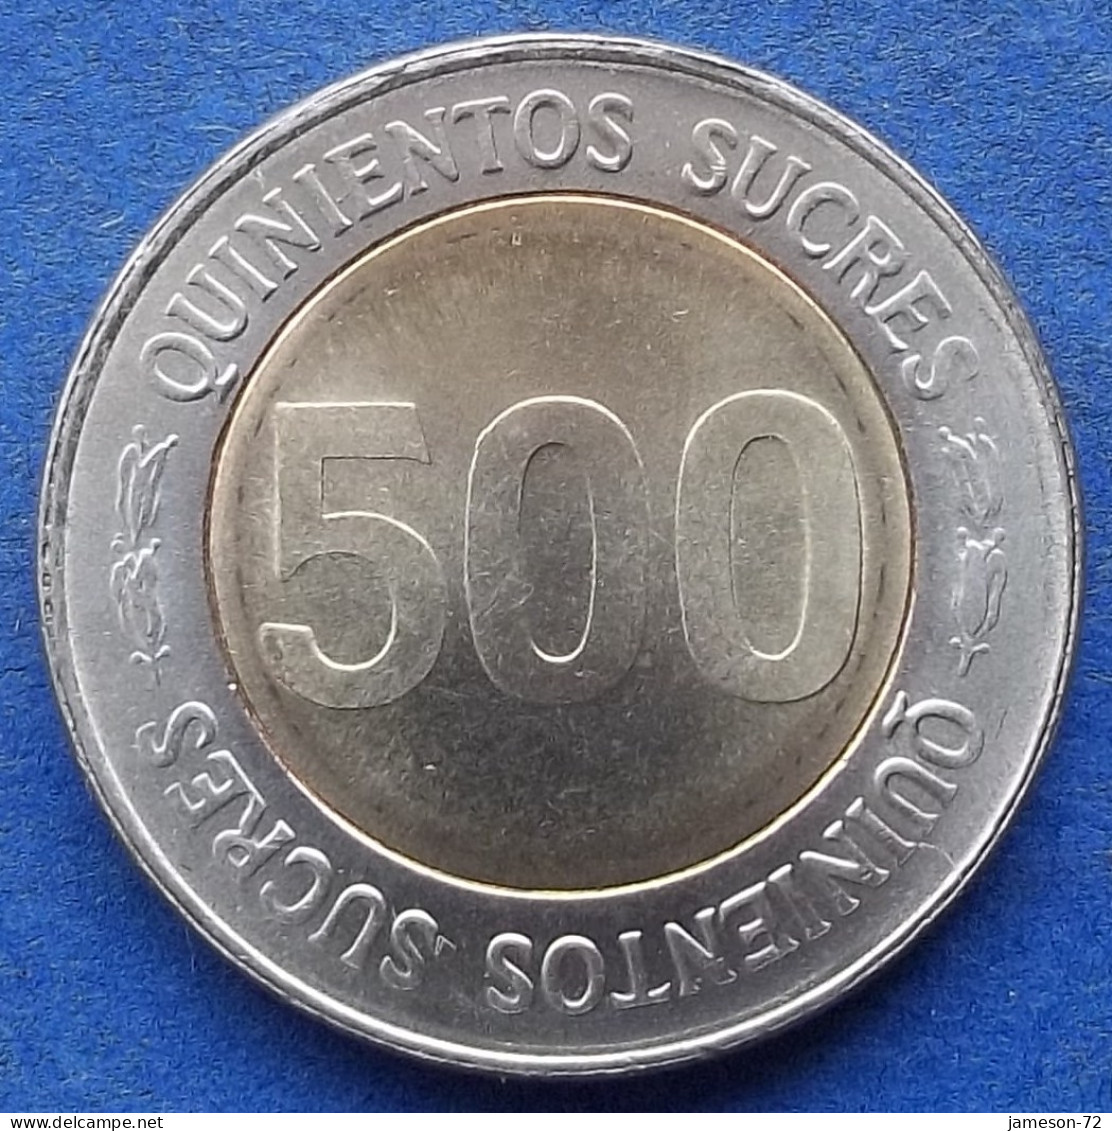 ECUADOR - 500 Sucres 1997 "Isidro Ayora" KM# 102 Decimal Coinage (1872-1999) - Edelweiss Coins - Equateur